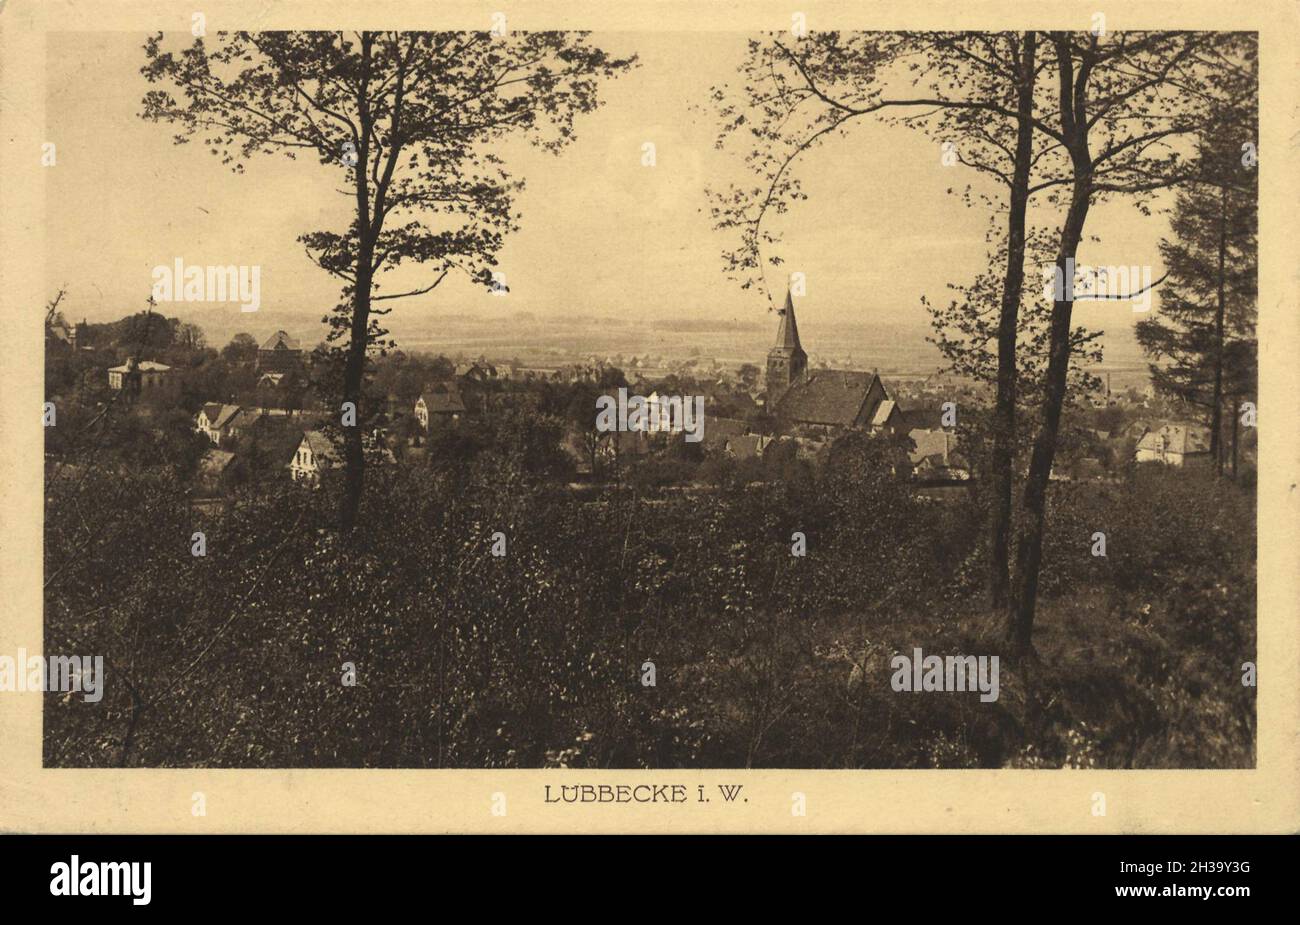 Lübbecke i.W., im Nordosten Nordrhein-Westfalen, Deutschland, Ansicht von ca 1910, digitale Reproduktion einer gemeinfreien Postkarte Stock Photo